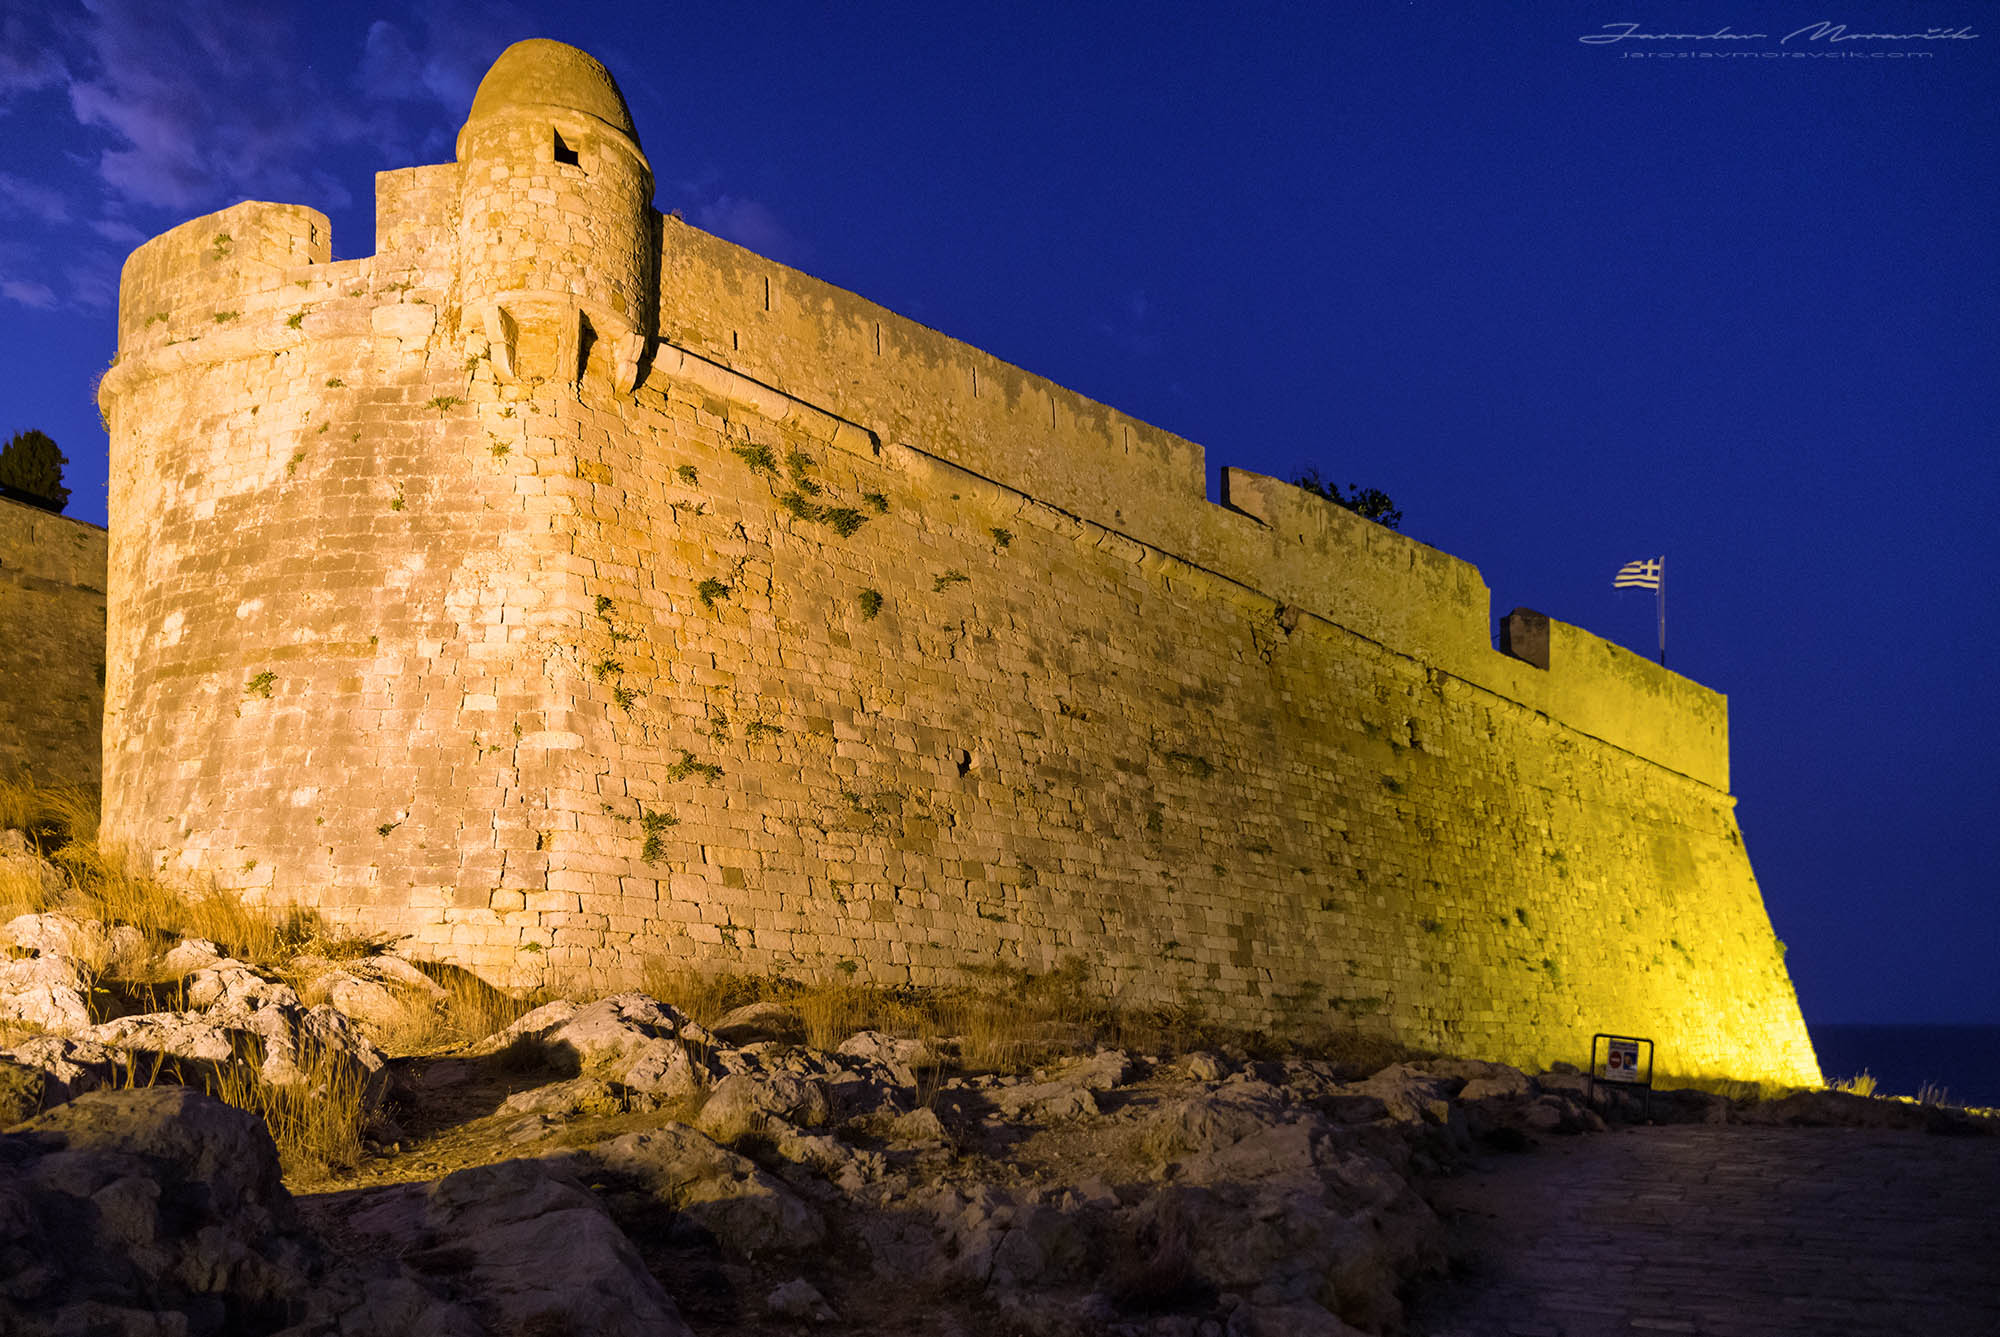 Pevnosť v Rethymne, Kréta - Grécko